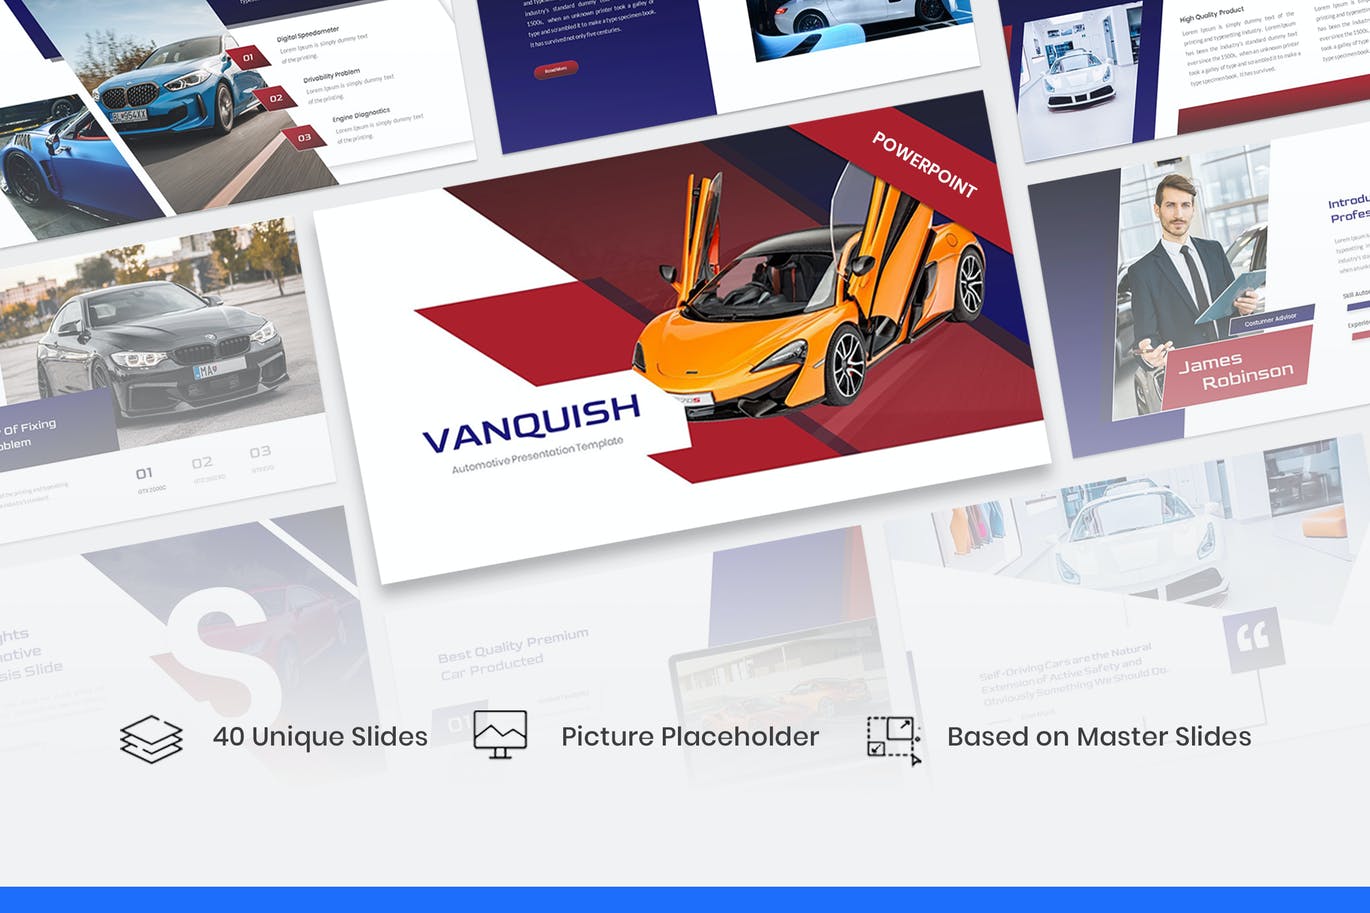 汽车业务展示PPT幻灯片模板素材 Vanquish – Automotive PowerPoint Template 幻灯图表 第1张